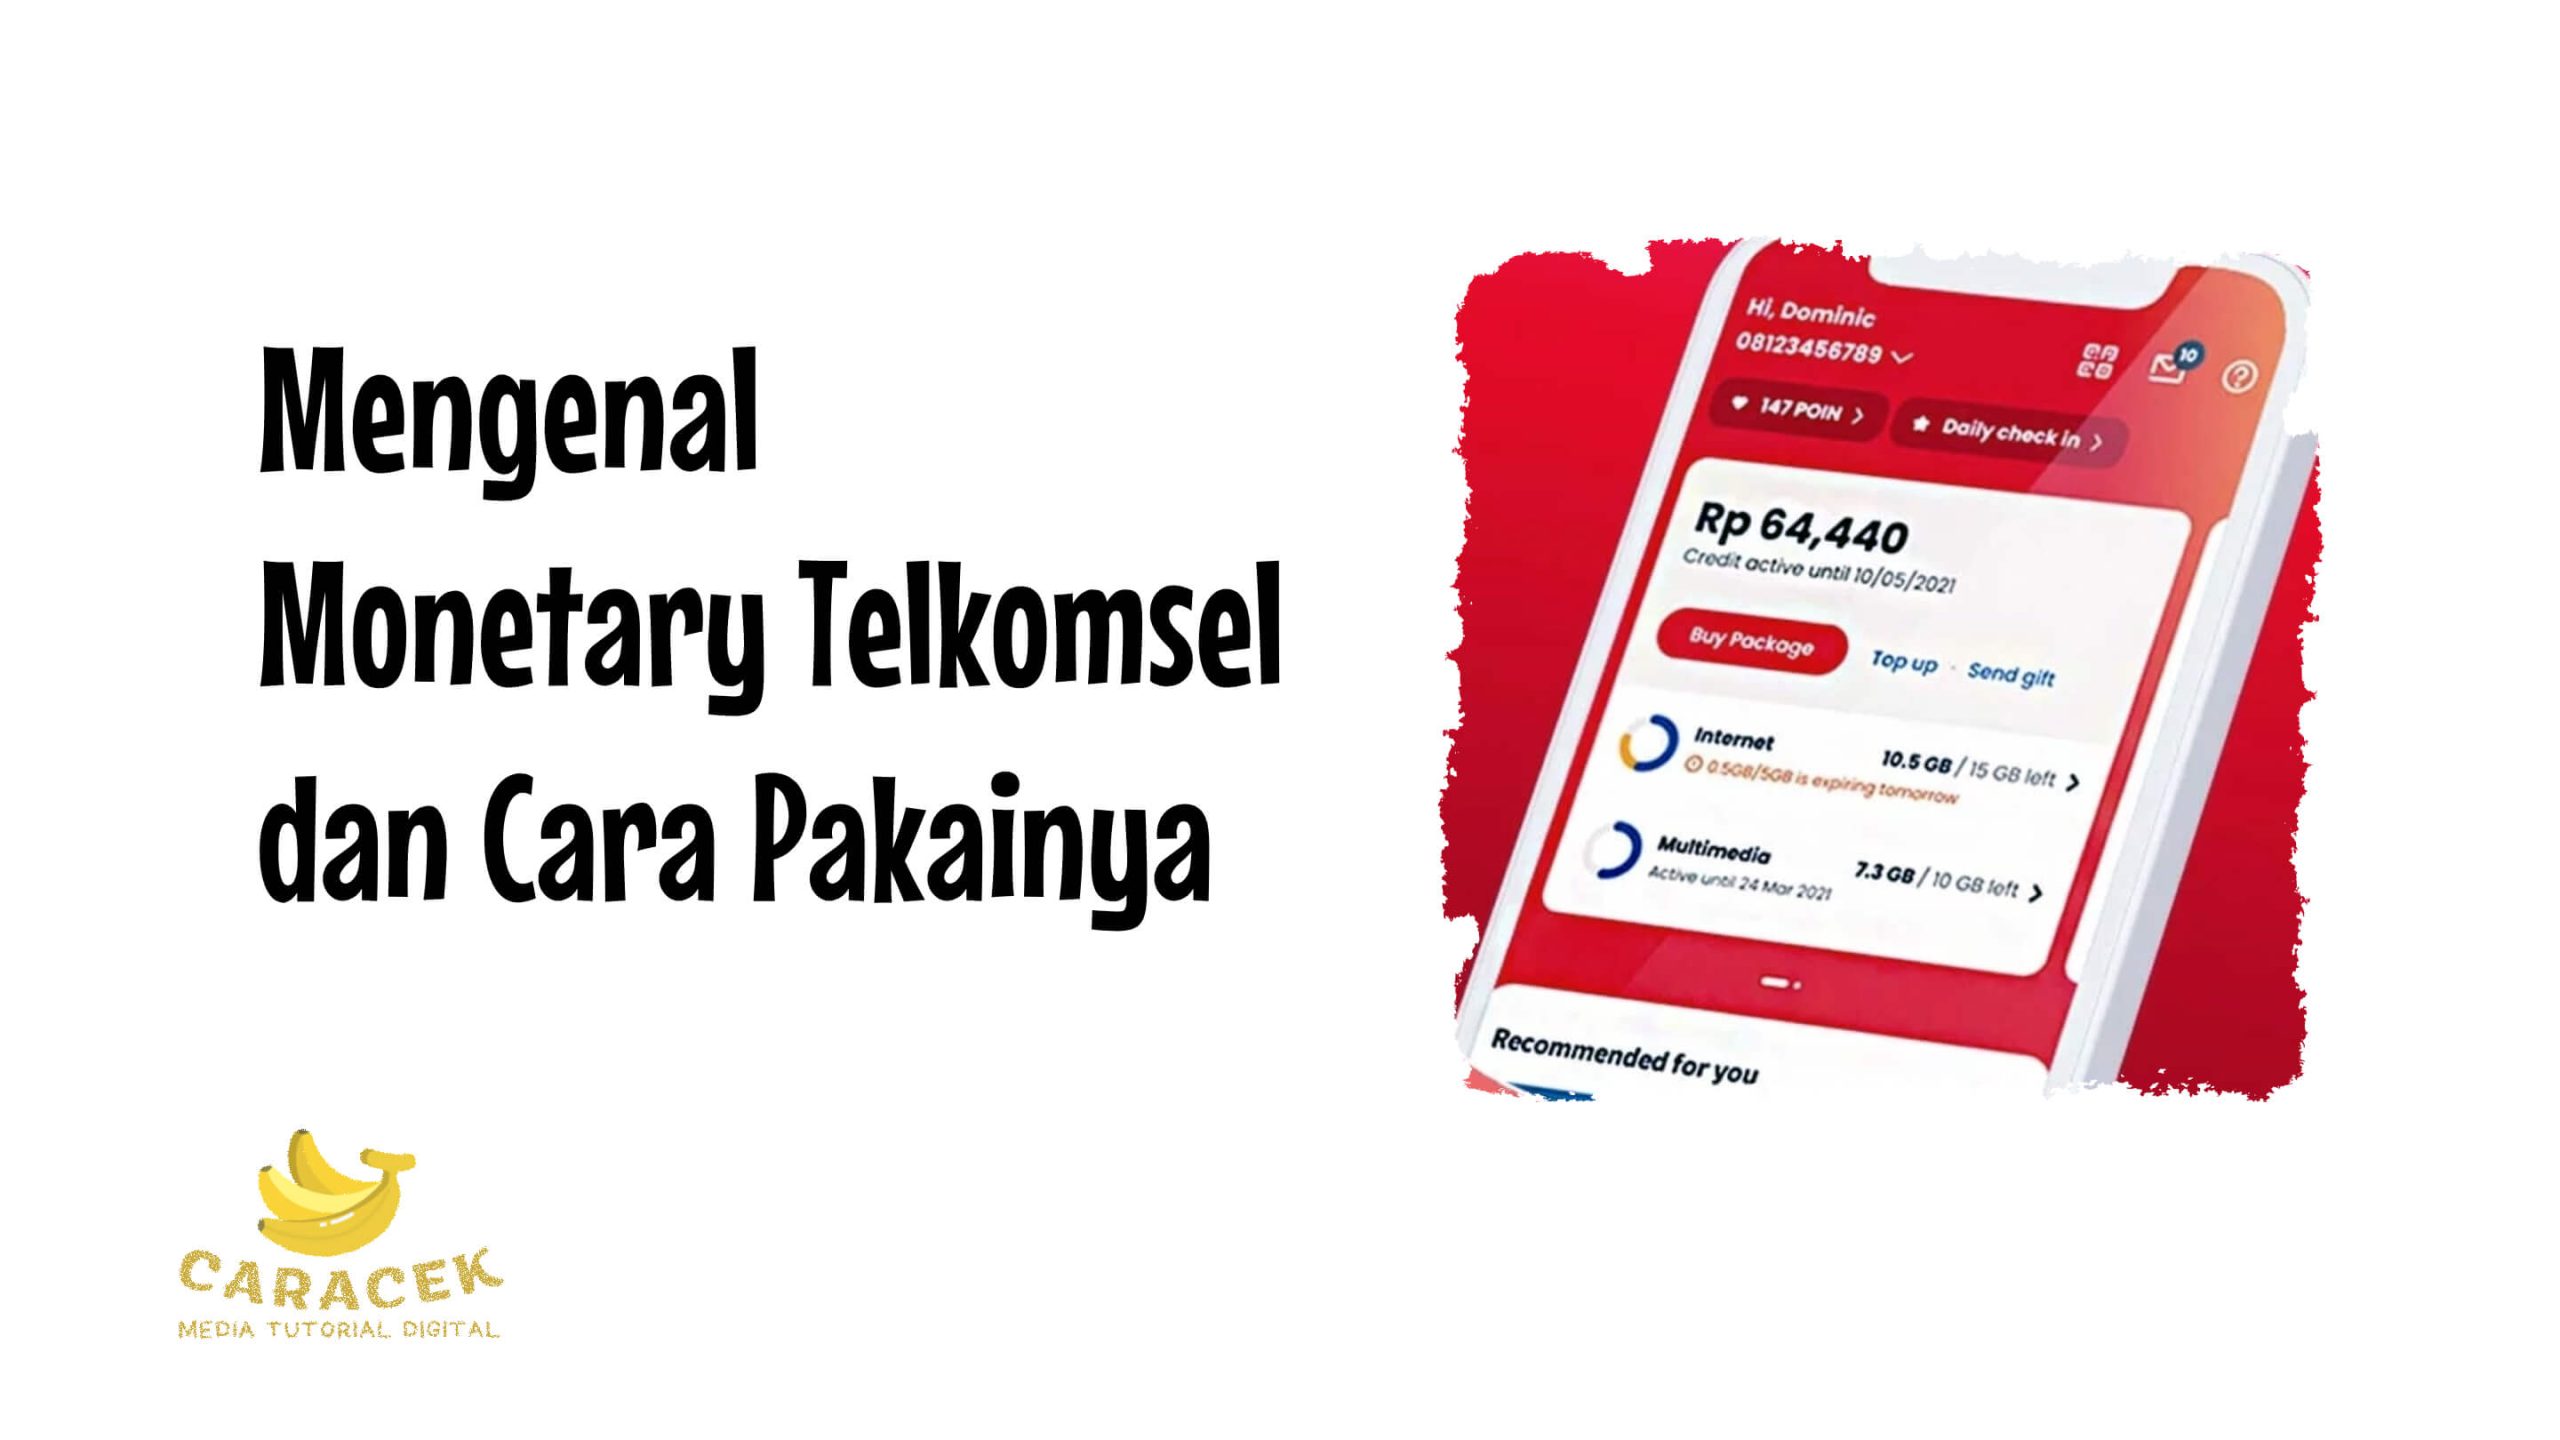 Monetary Telkomsel